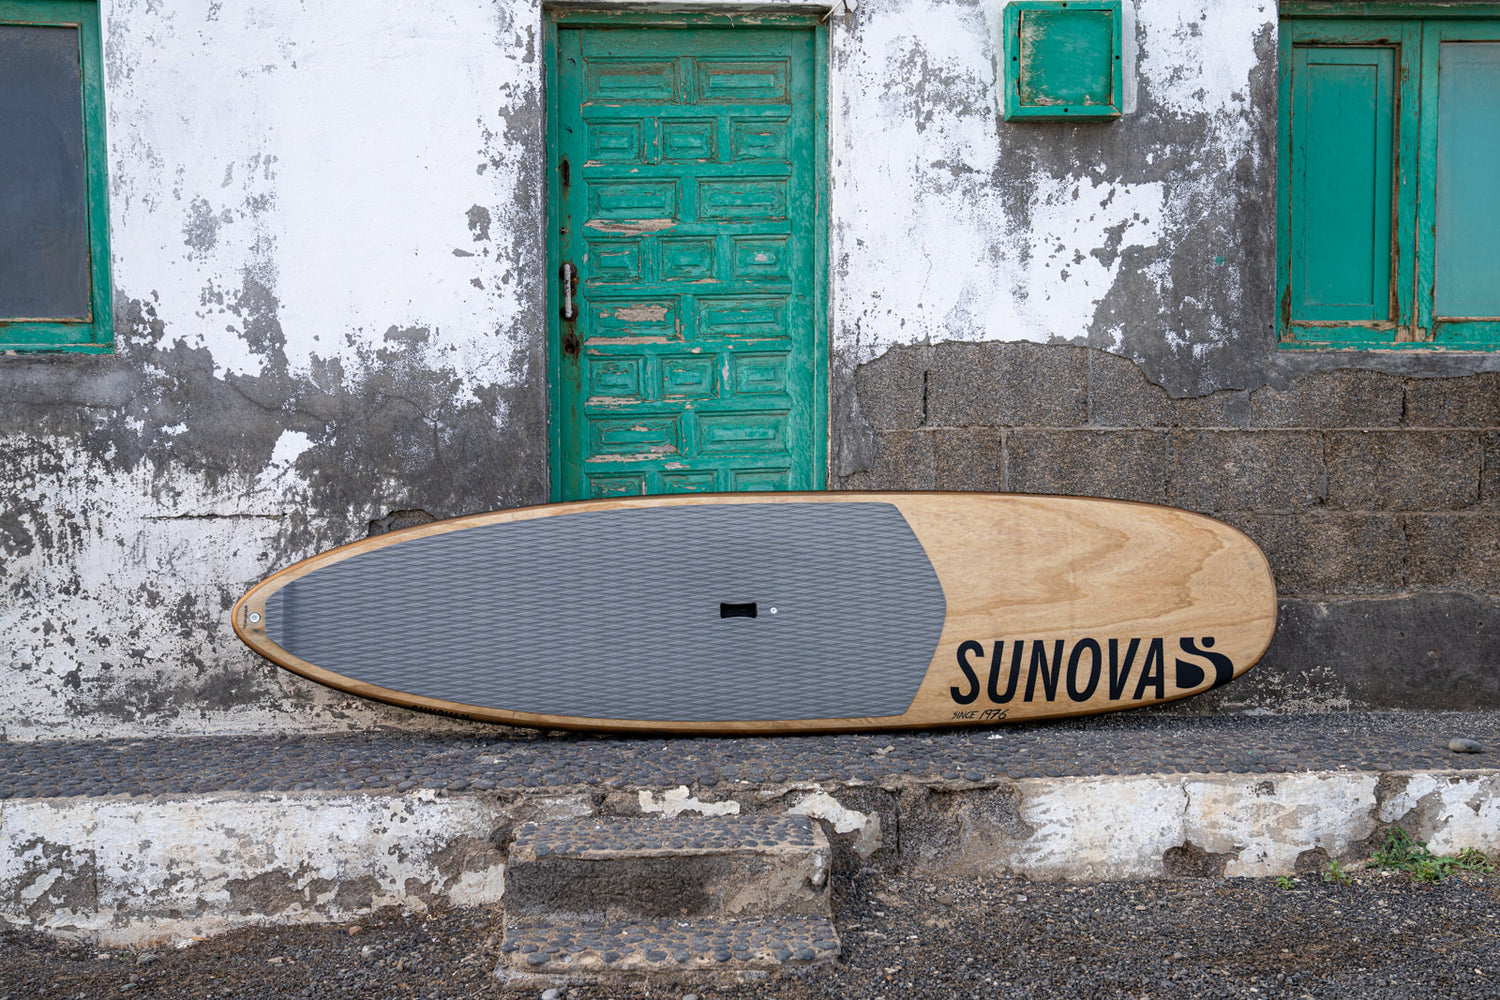 Sunova Style Wave SUP Board auf dem Rail stehend an eine Hauswand angelehnt.